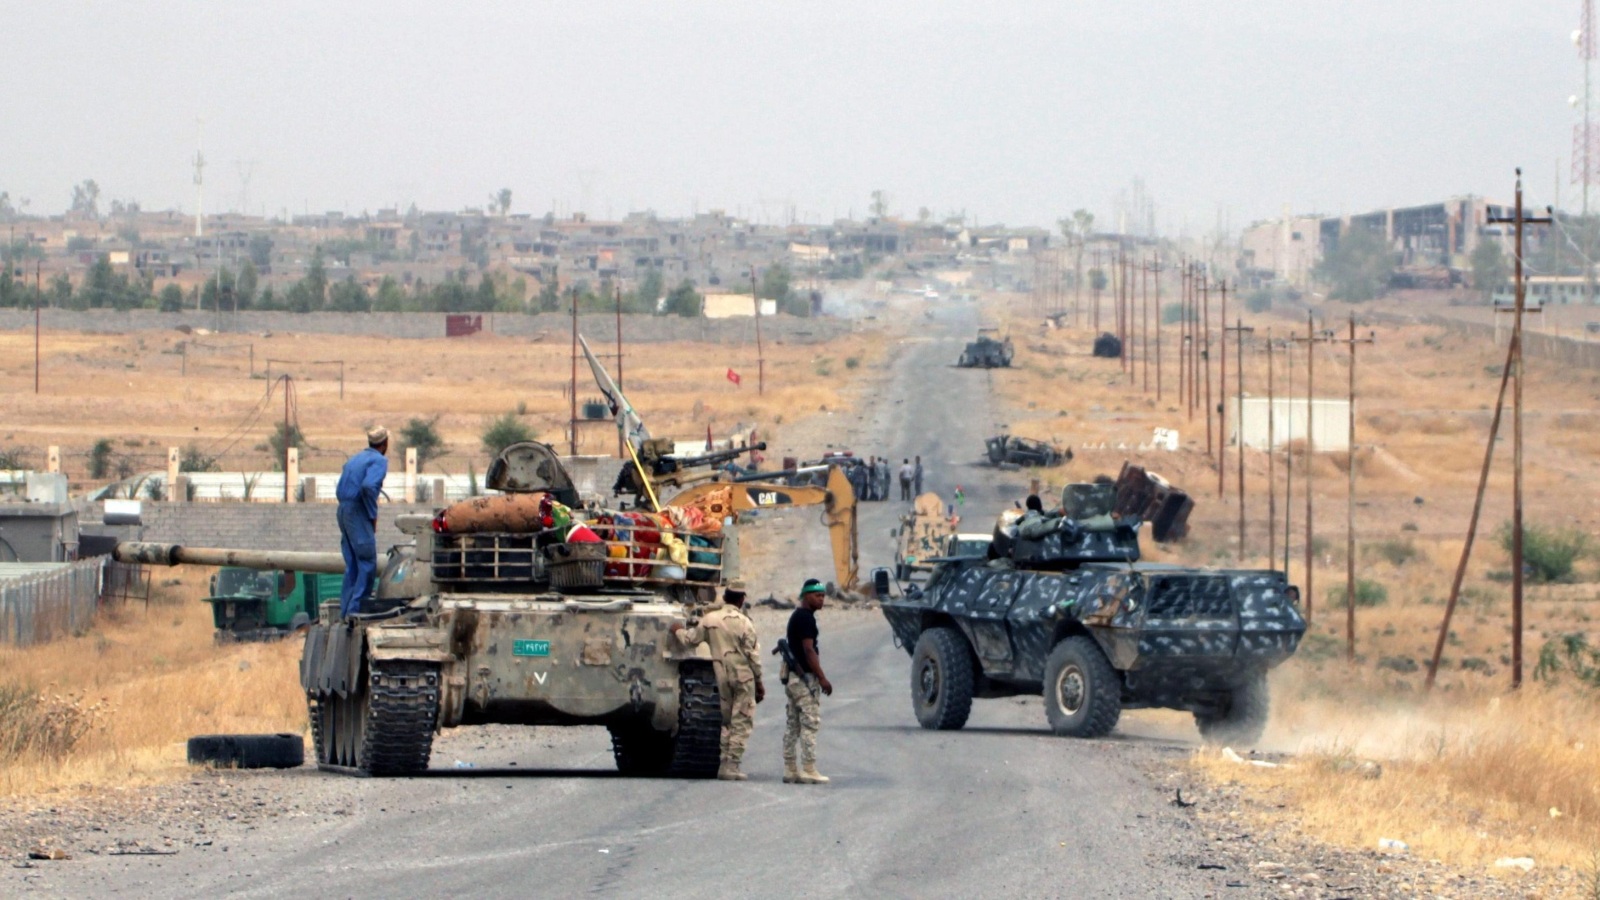 ‪قوات عراقية ومسلحون من مليشيات الحشد أثناء تجمعهم قبل أيام قرب مدينة بيجي‬ (الأوروبية)